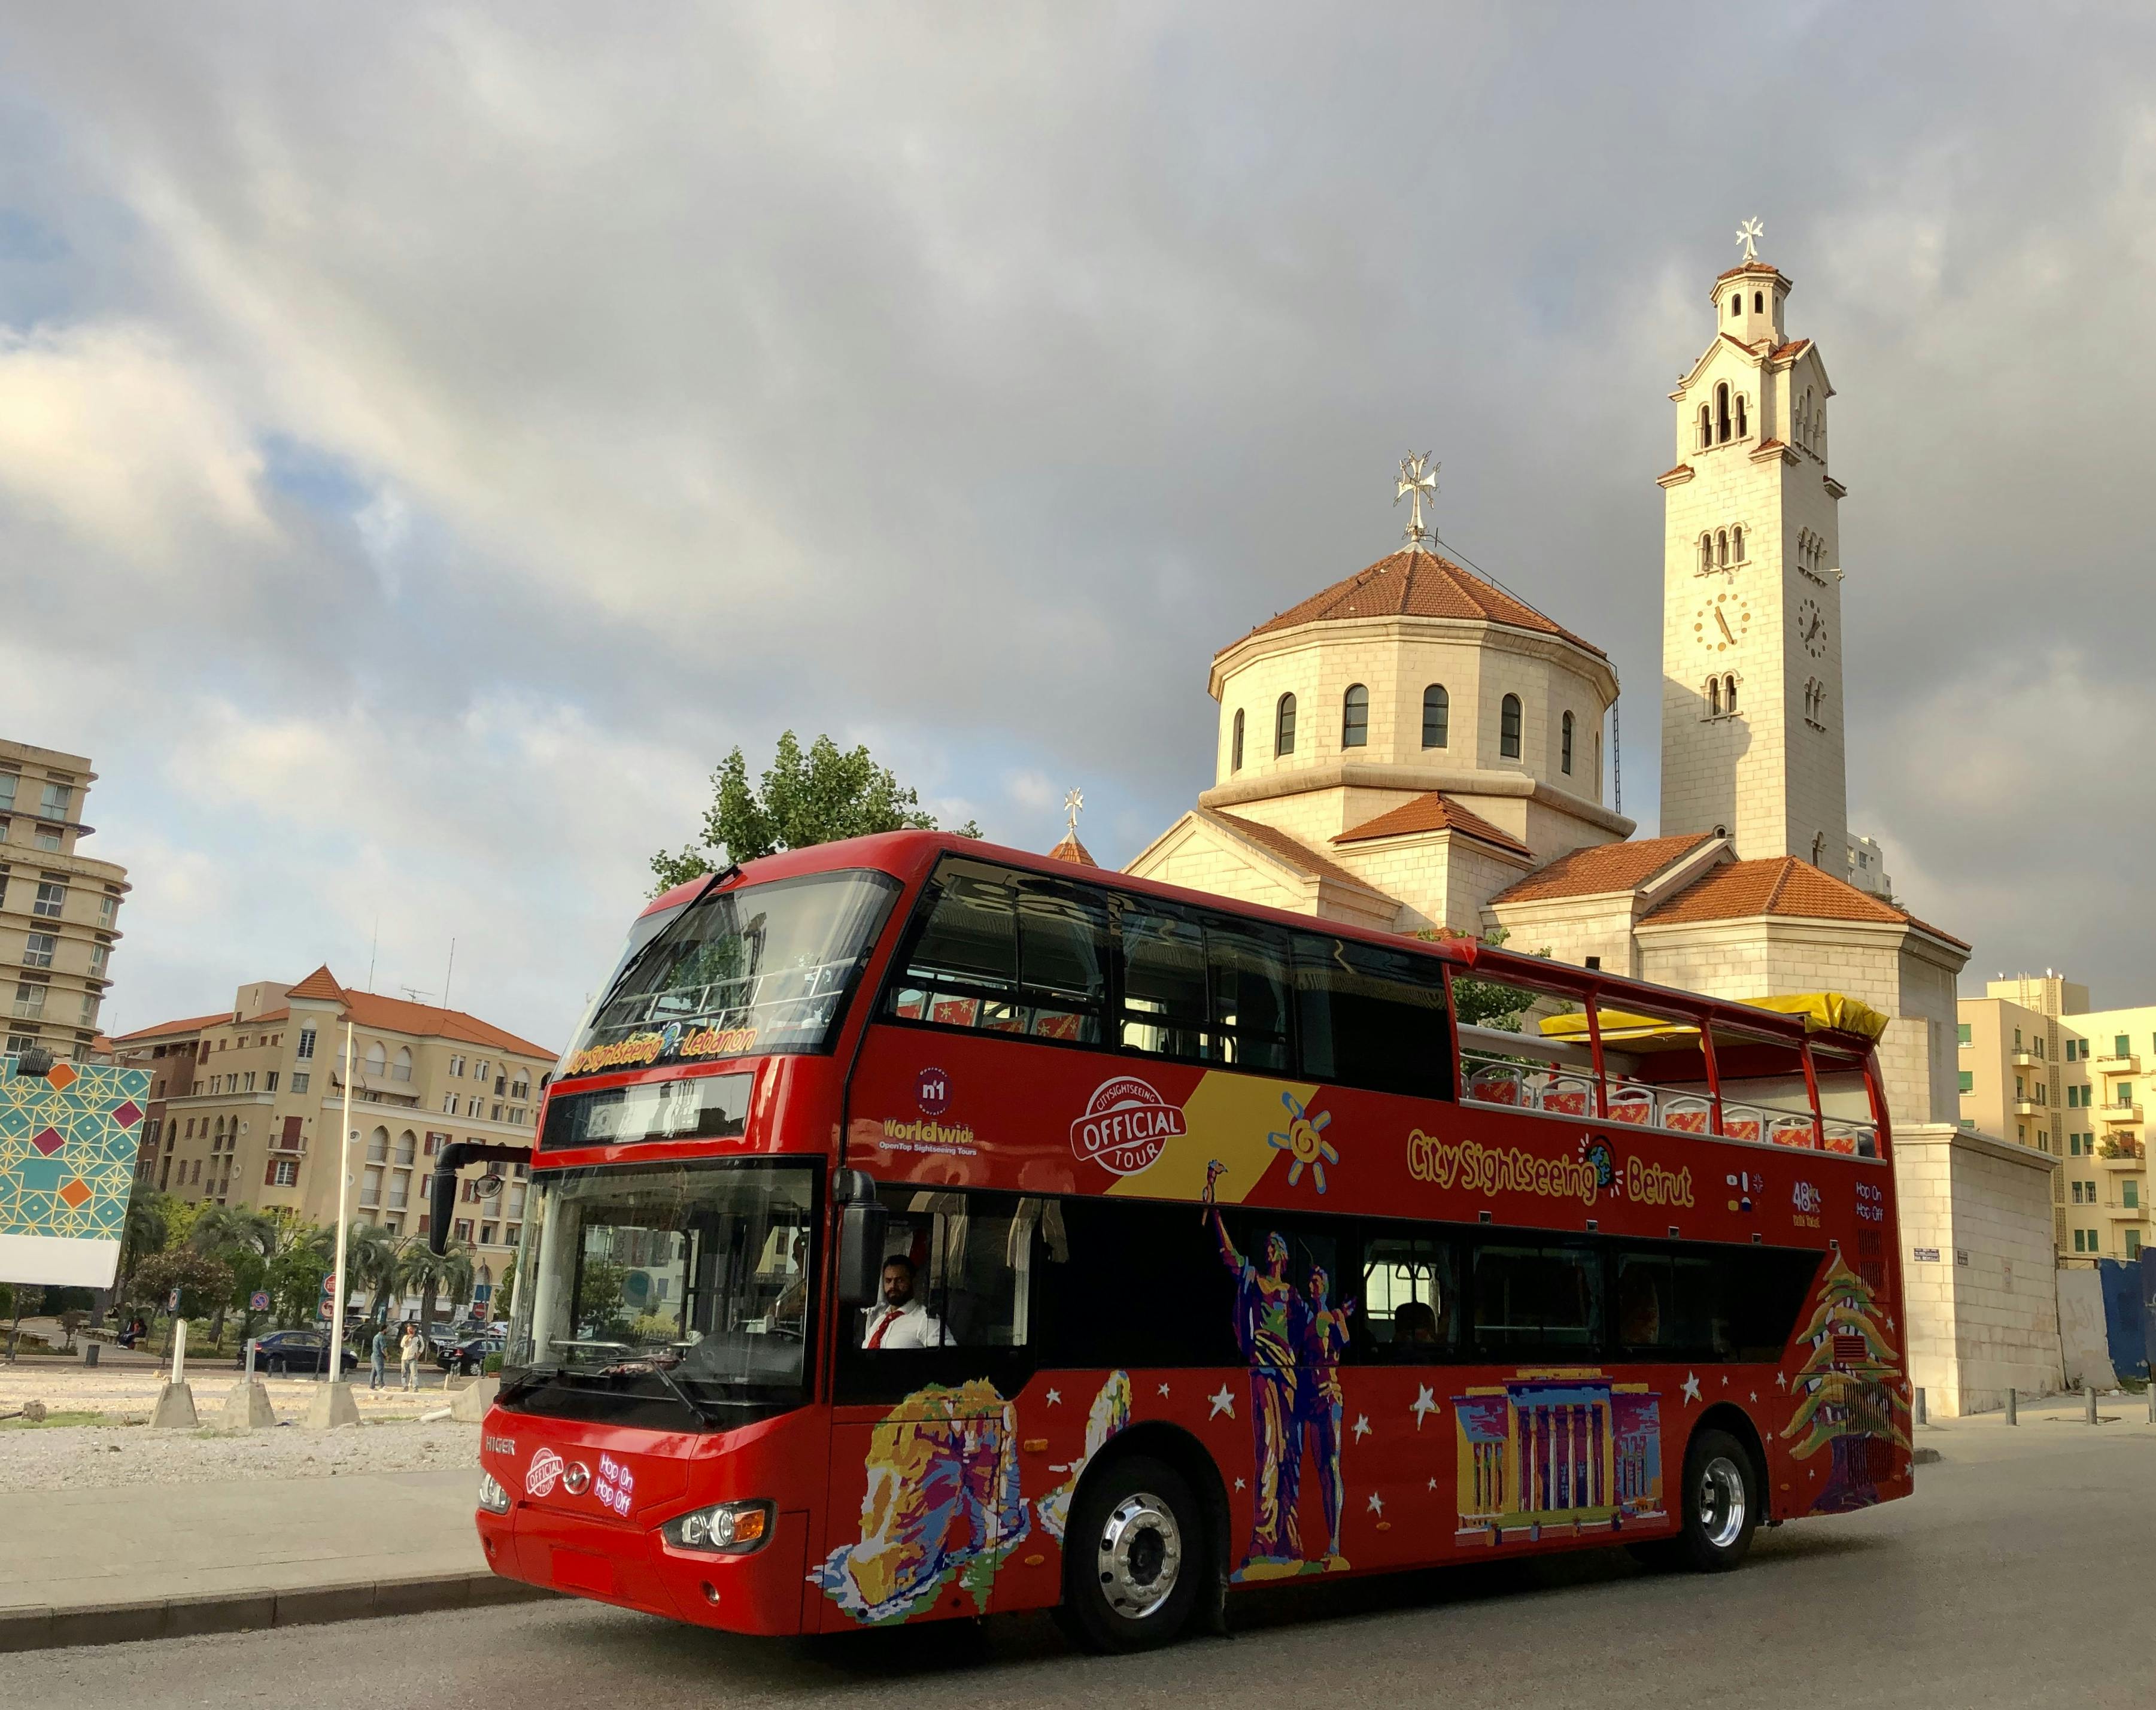 Wycieczka autobusowa po Bejrucie z możliwością wsiadania i wysiadania po mieście